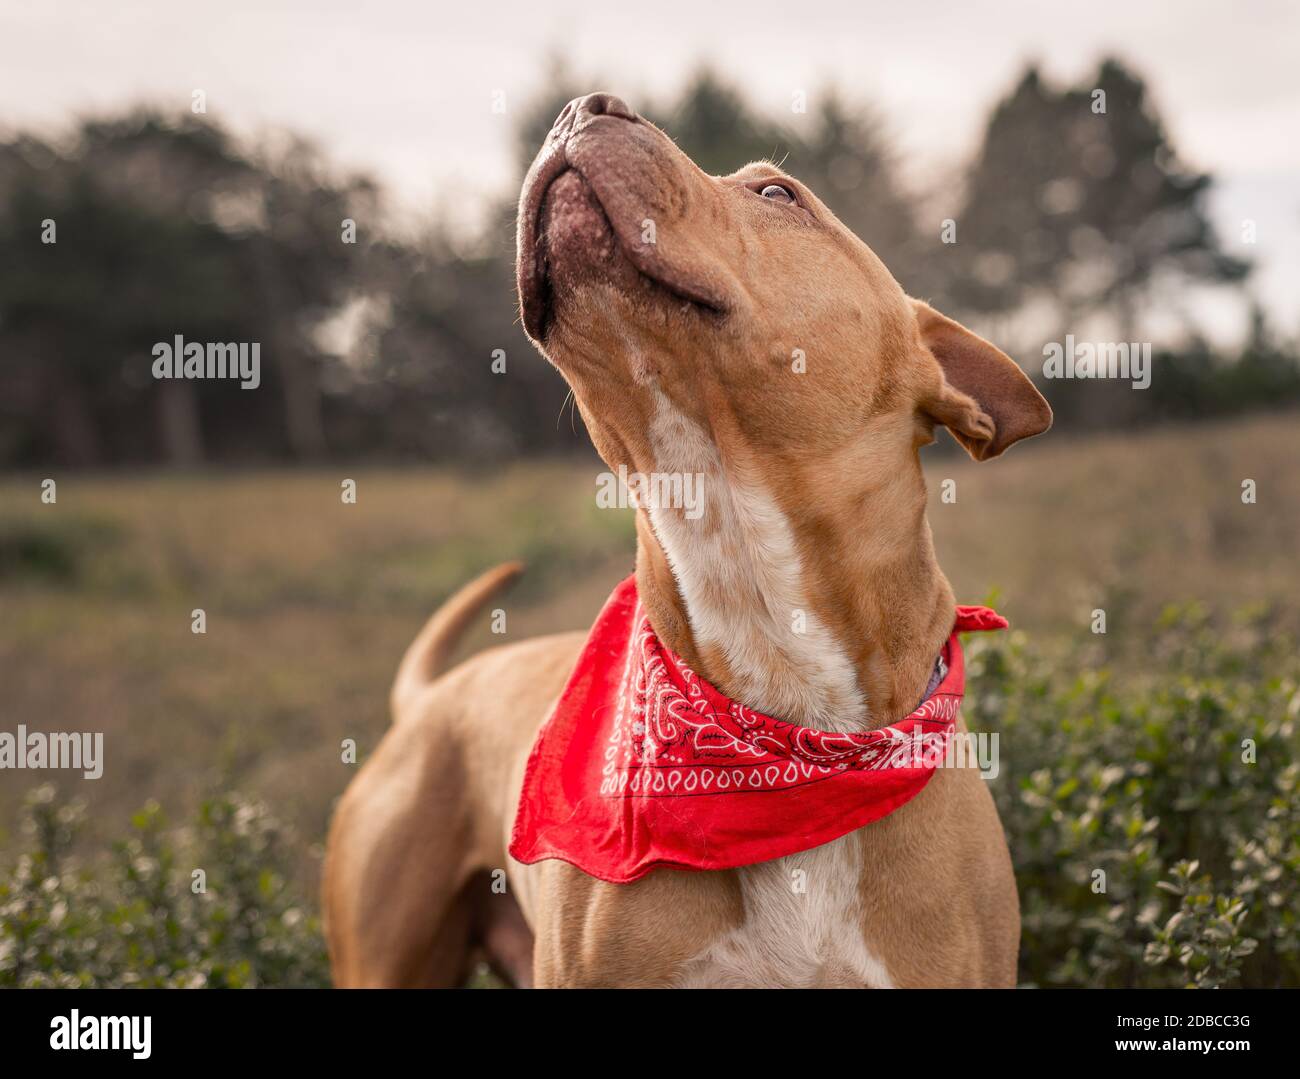 Nouveau pitbull terrier pup regardant avec joie son humain ami Banque D'Images